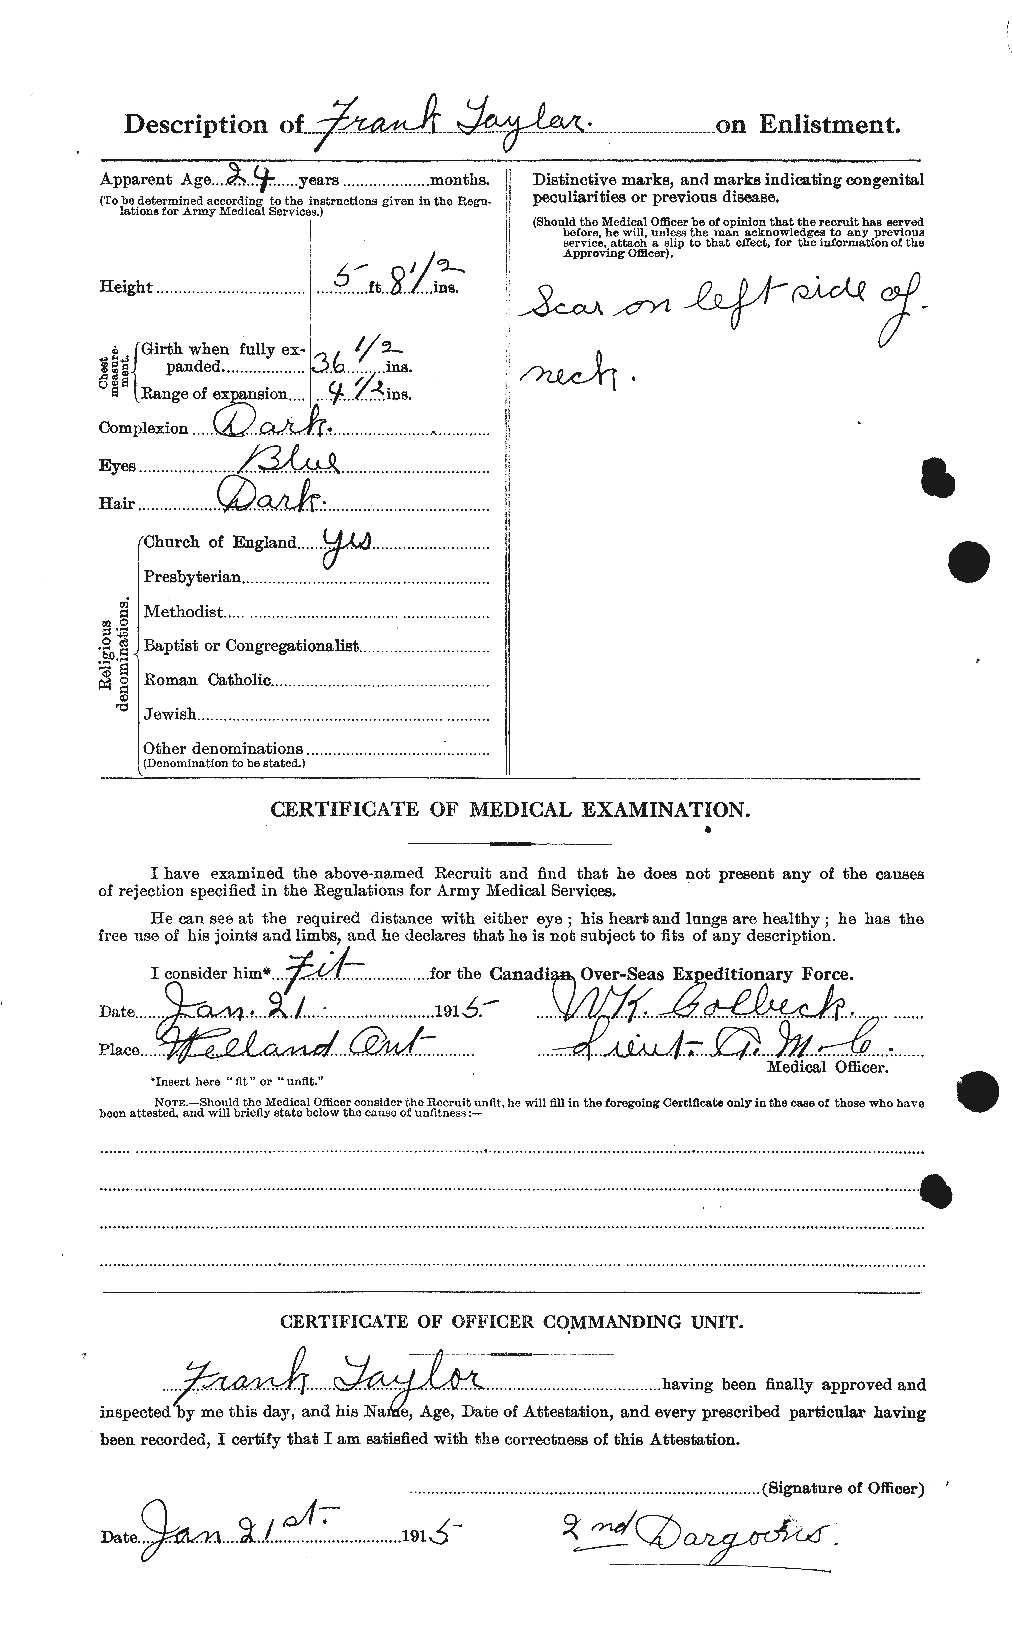 Dossiers du Personnel de la Première Guerre mondiale - CEC 625692b